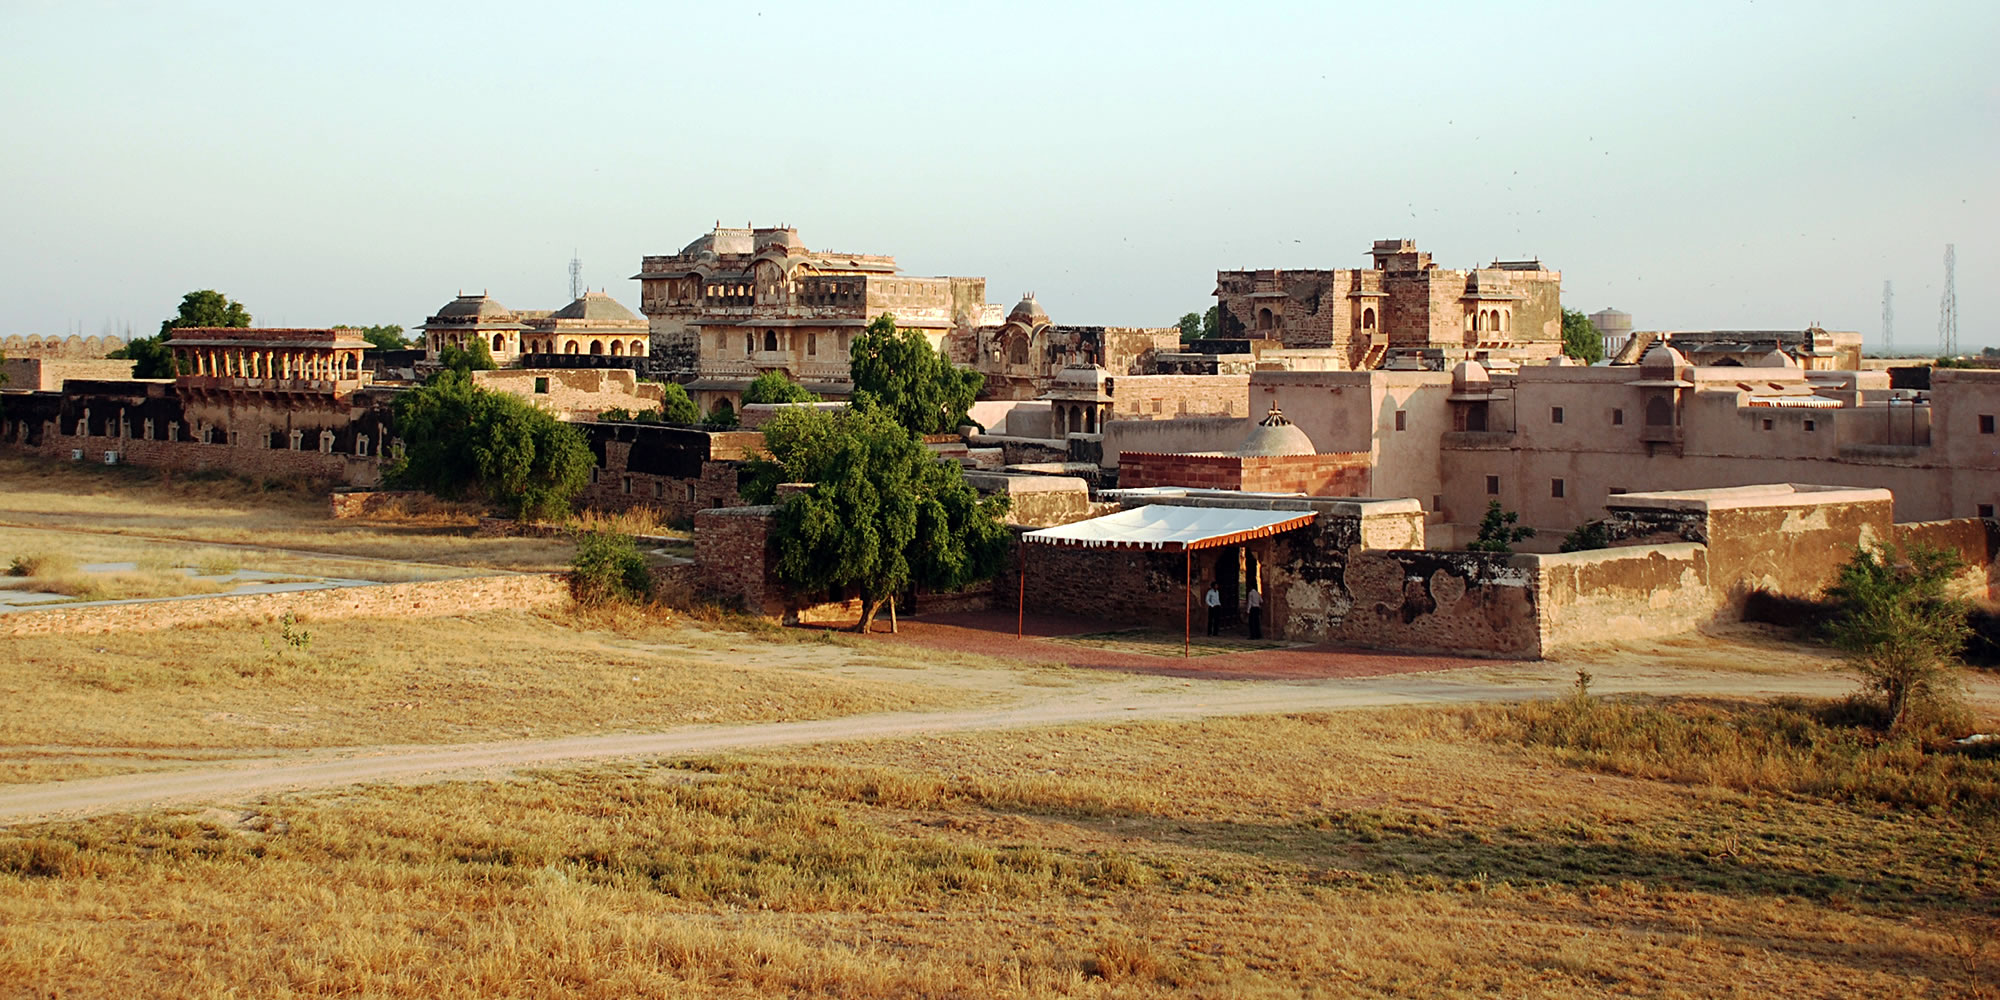 Ranvas, Nagaur, Rajasthan